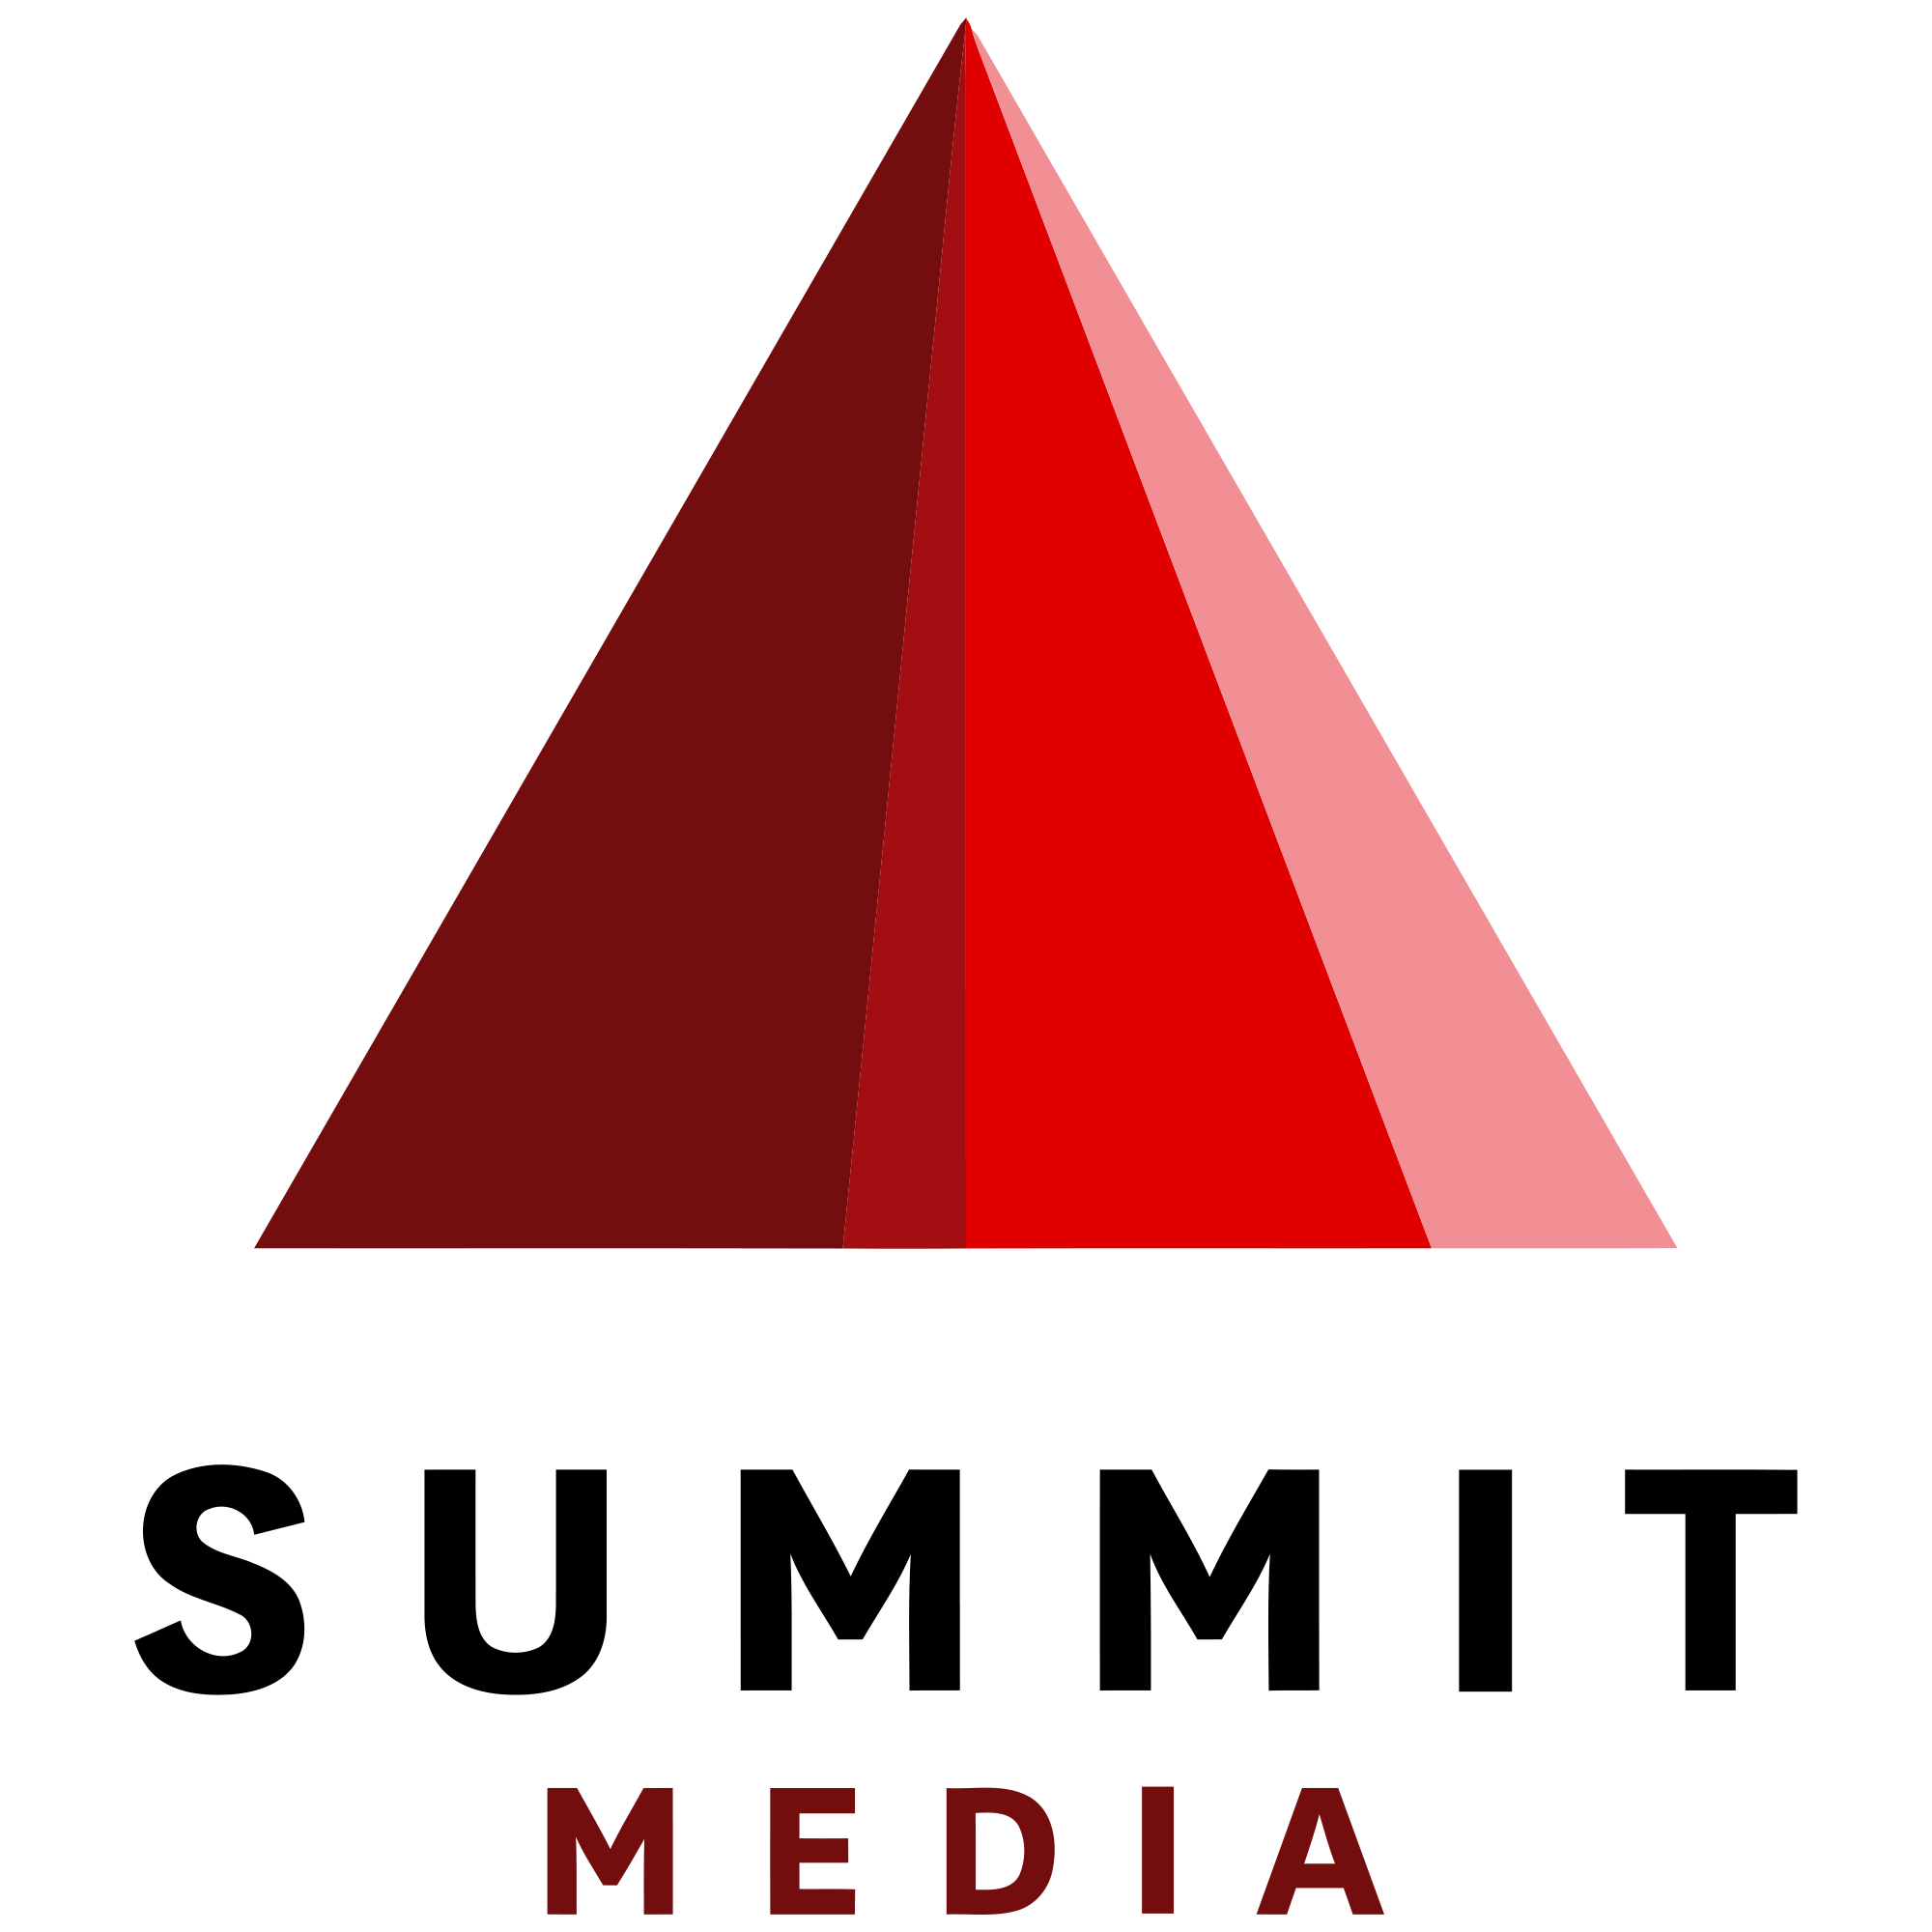 Summit Media